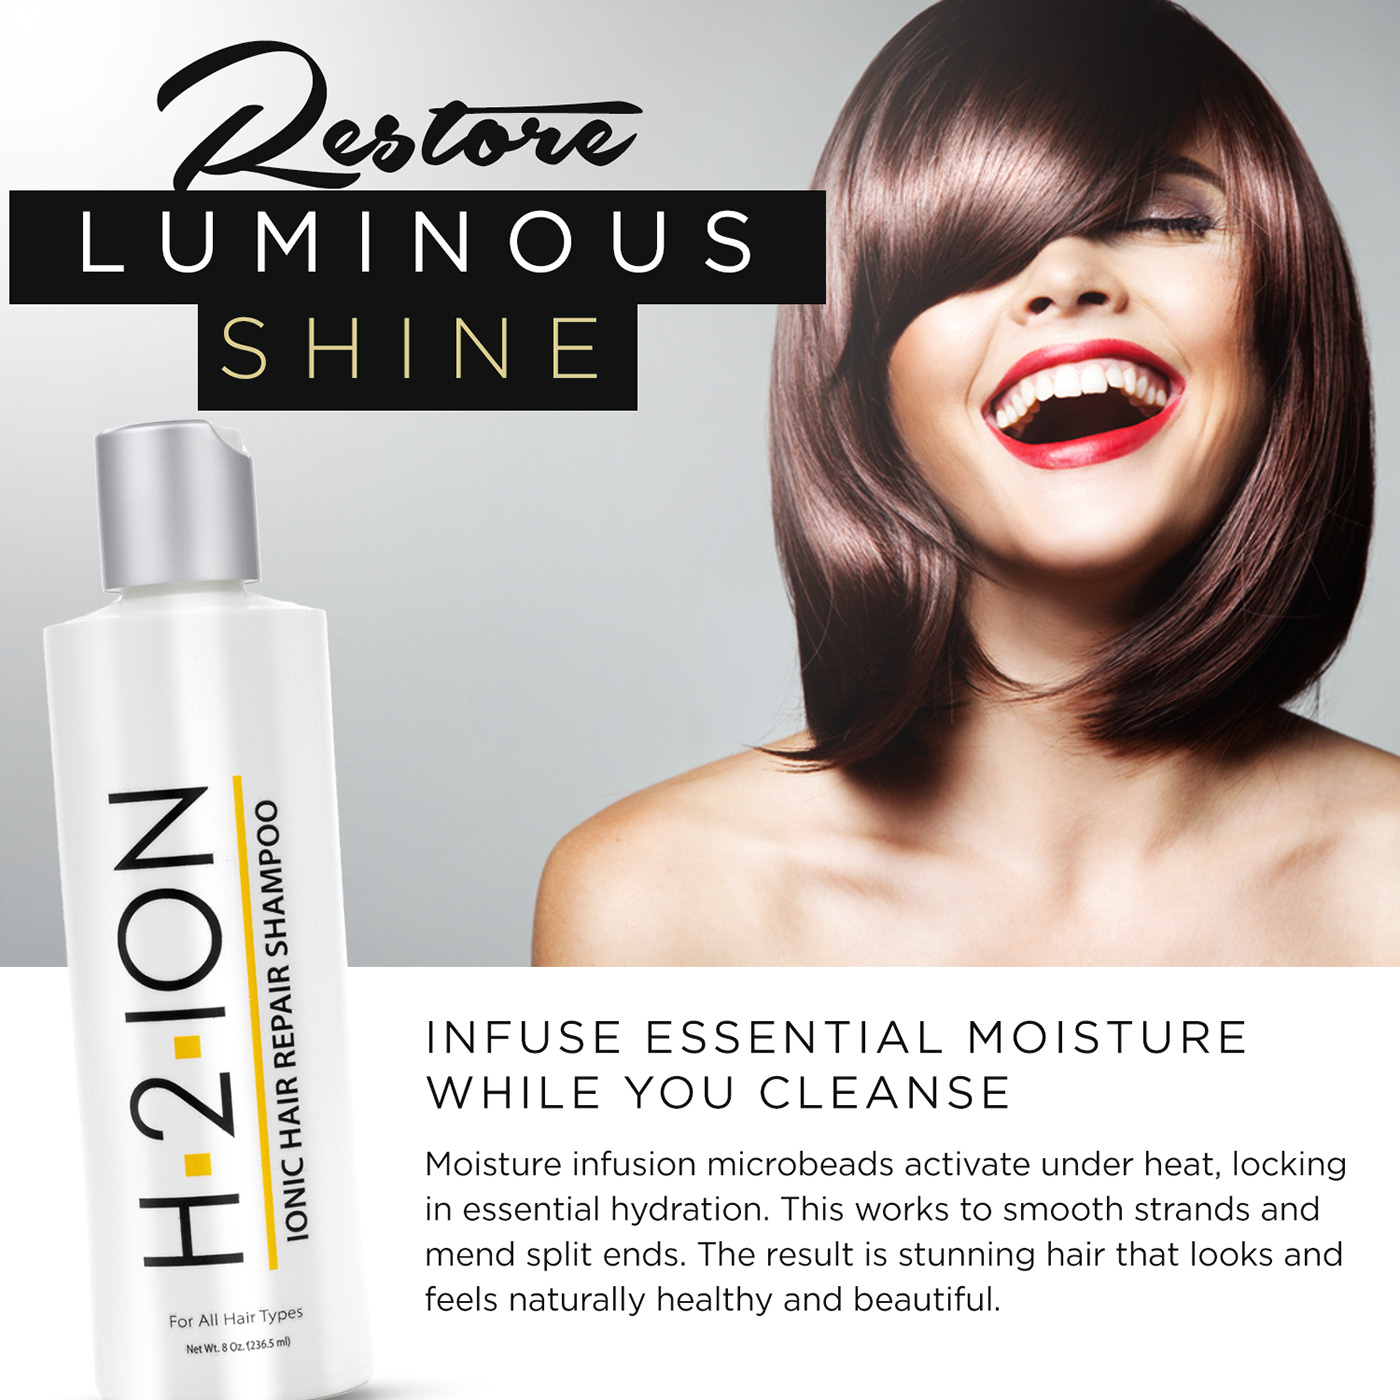 H2 ION Hair Repair Shampoo - Advertisement Copy on Behance